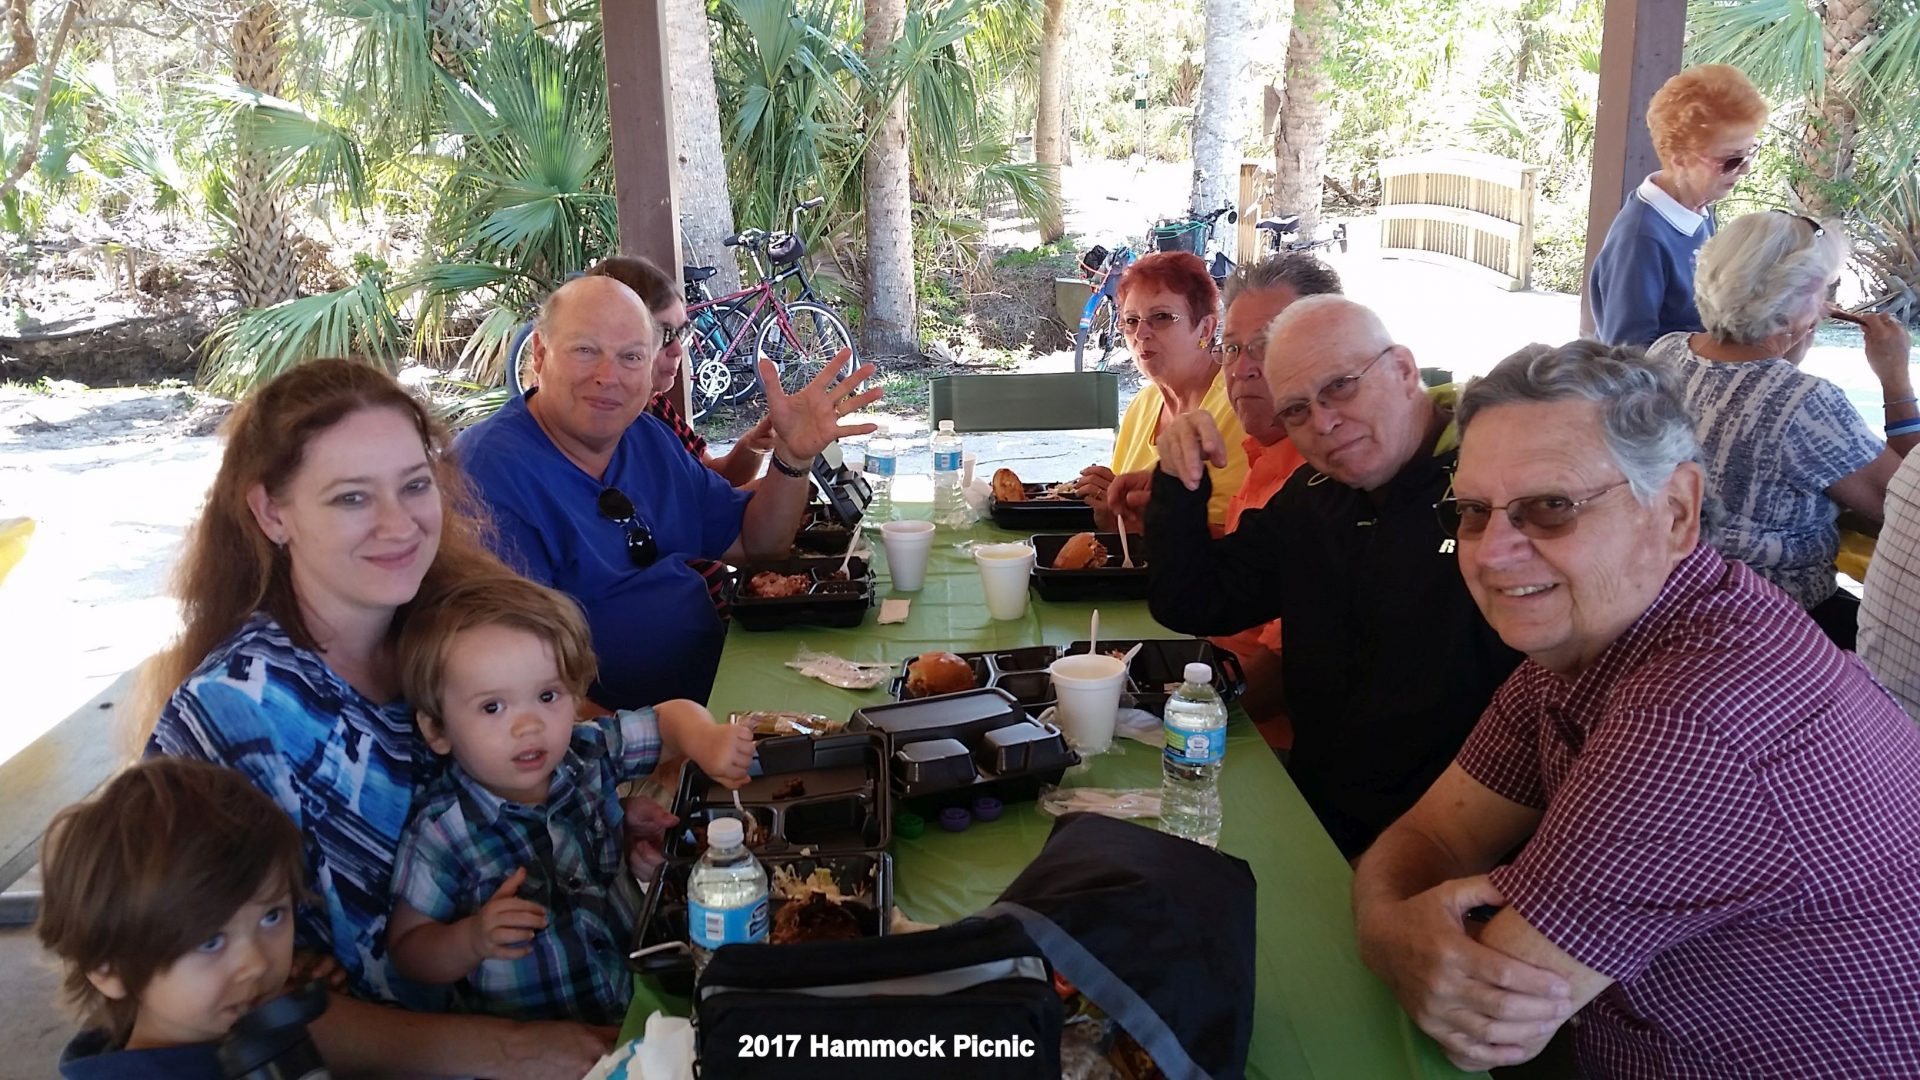 Don and family at 2017 Hammock Community Picnic